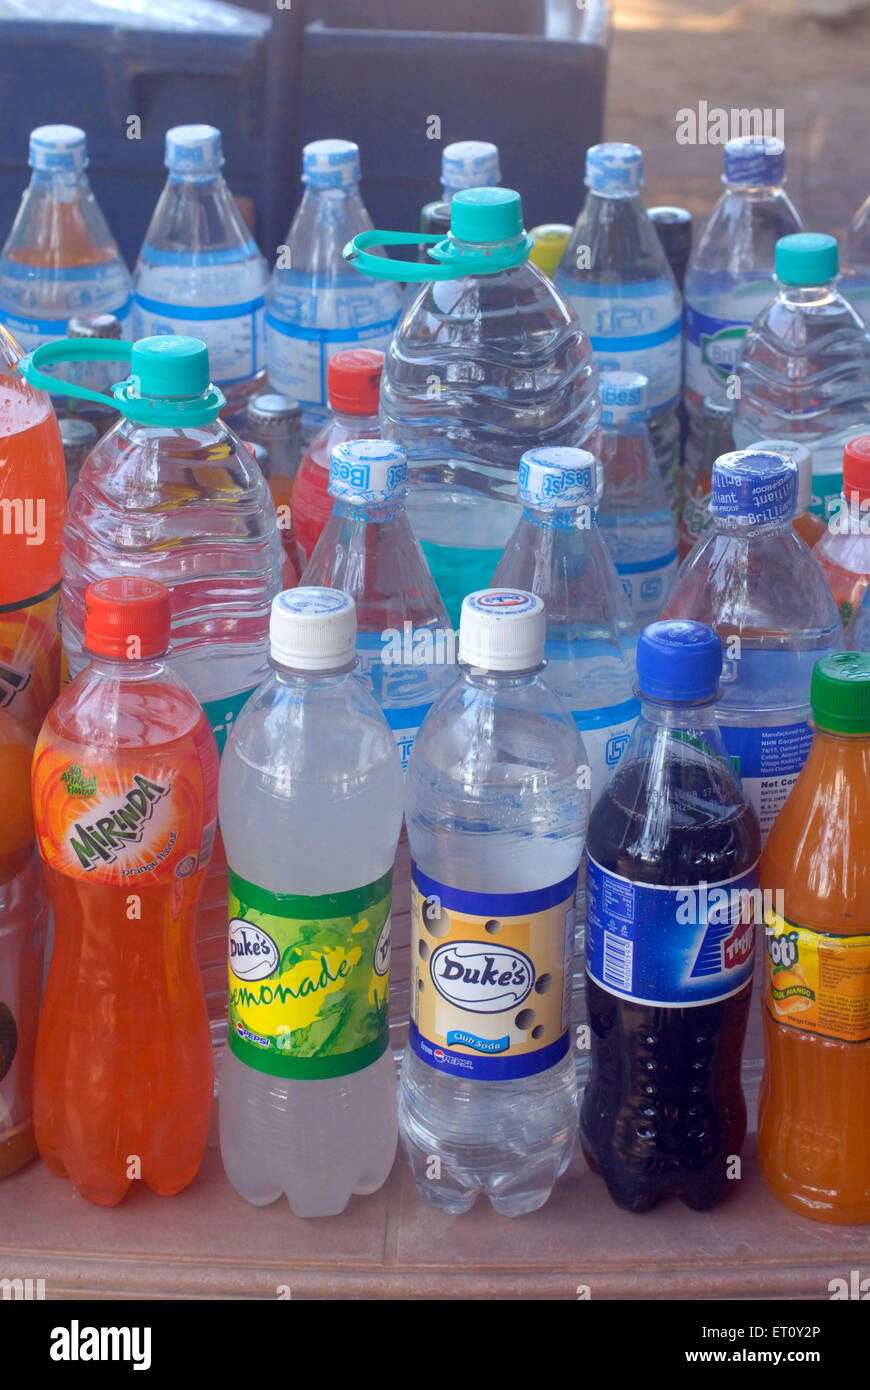 Bouteille en plastique PET, polyéthylène téréphtalate, boissons froides, bouteilles d'eau, boissons non alcoolisées, Inde Banque D'Images